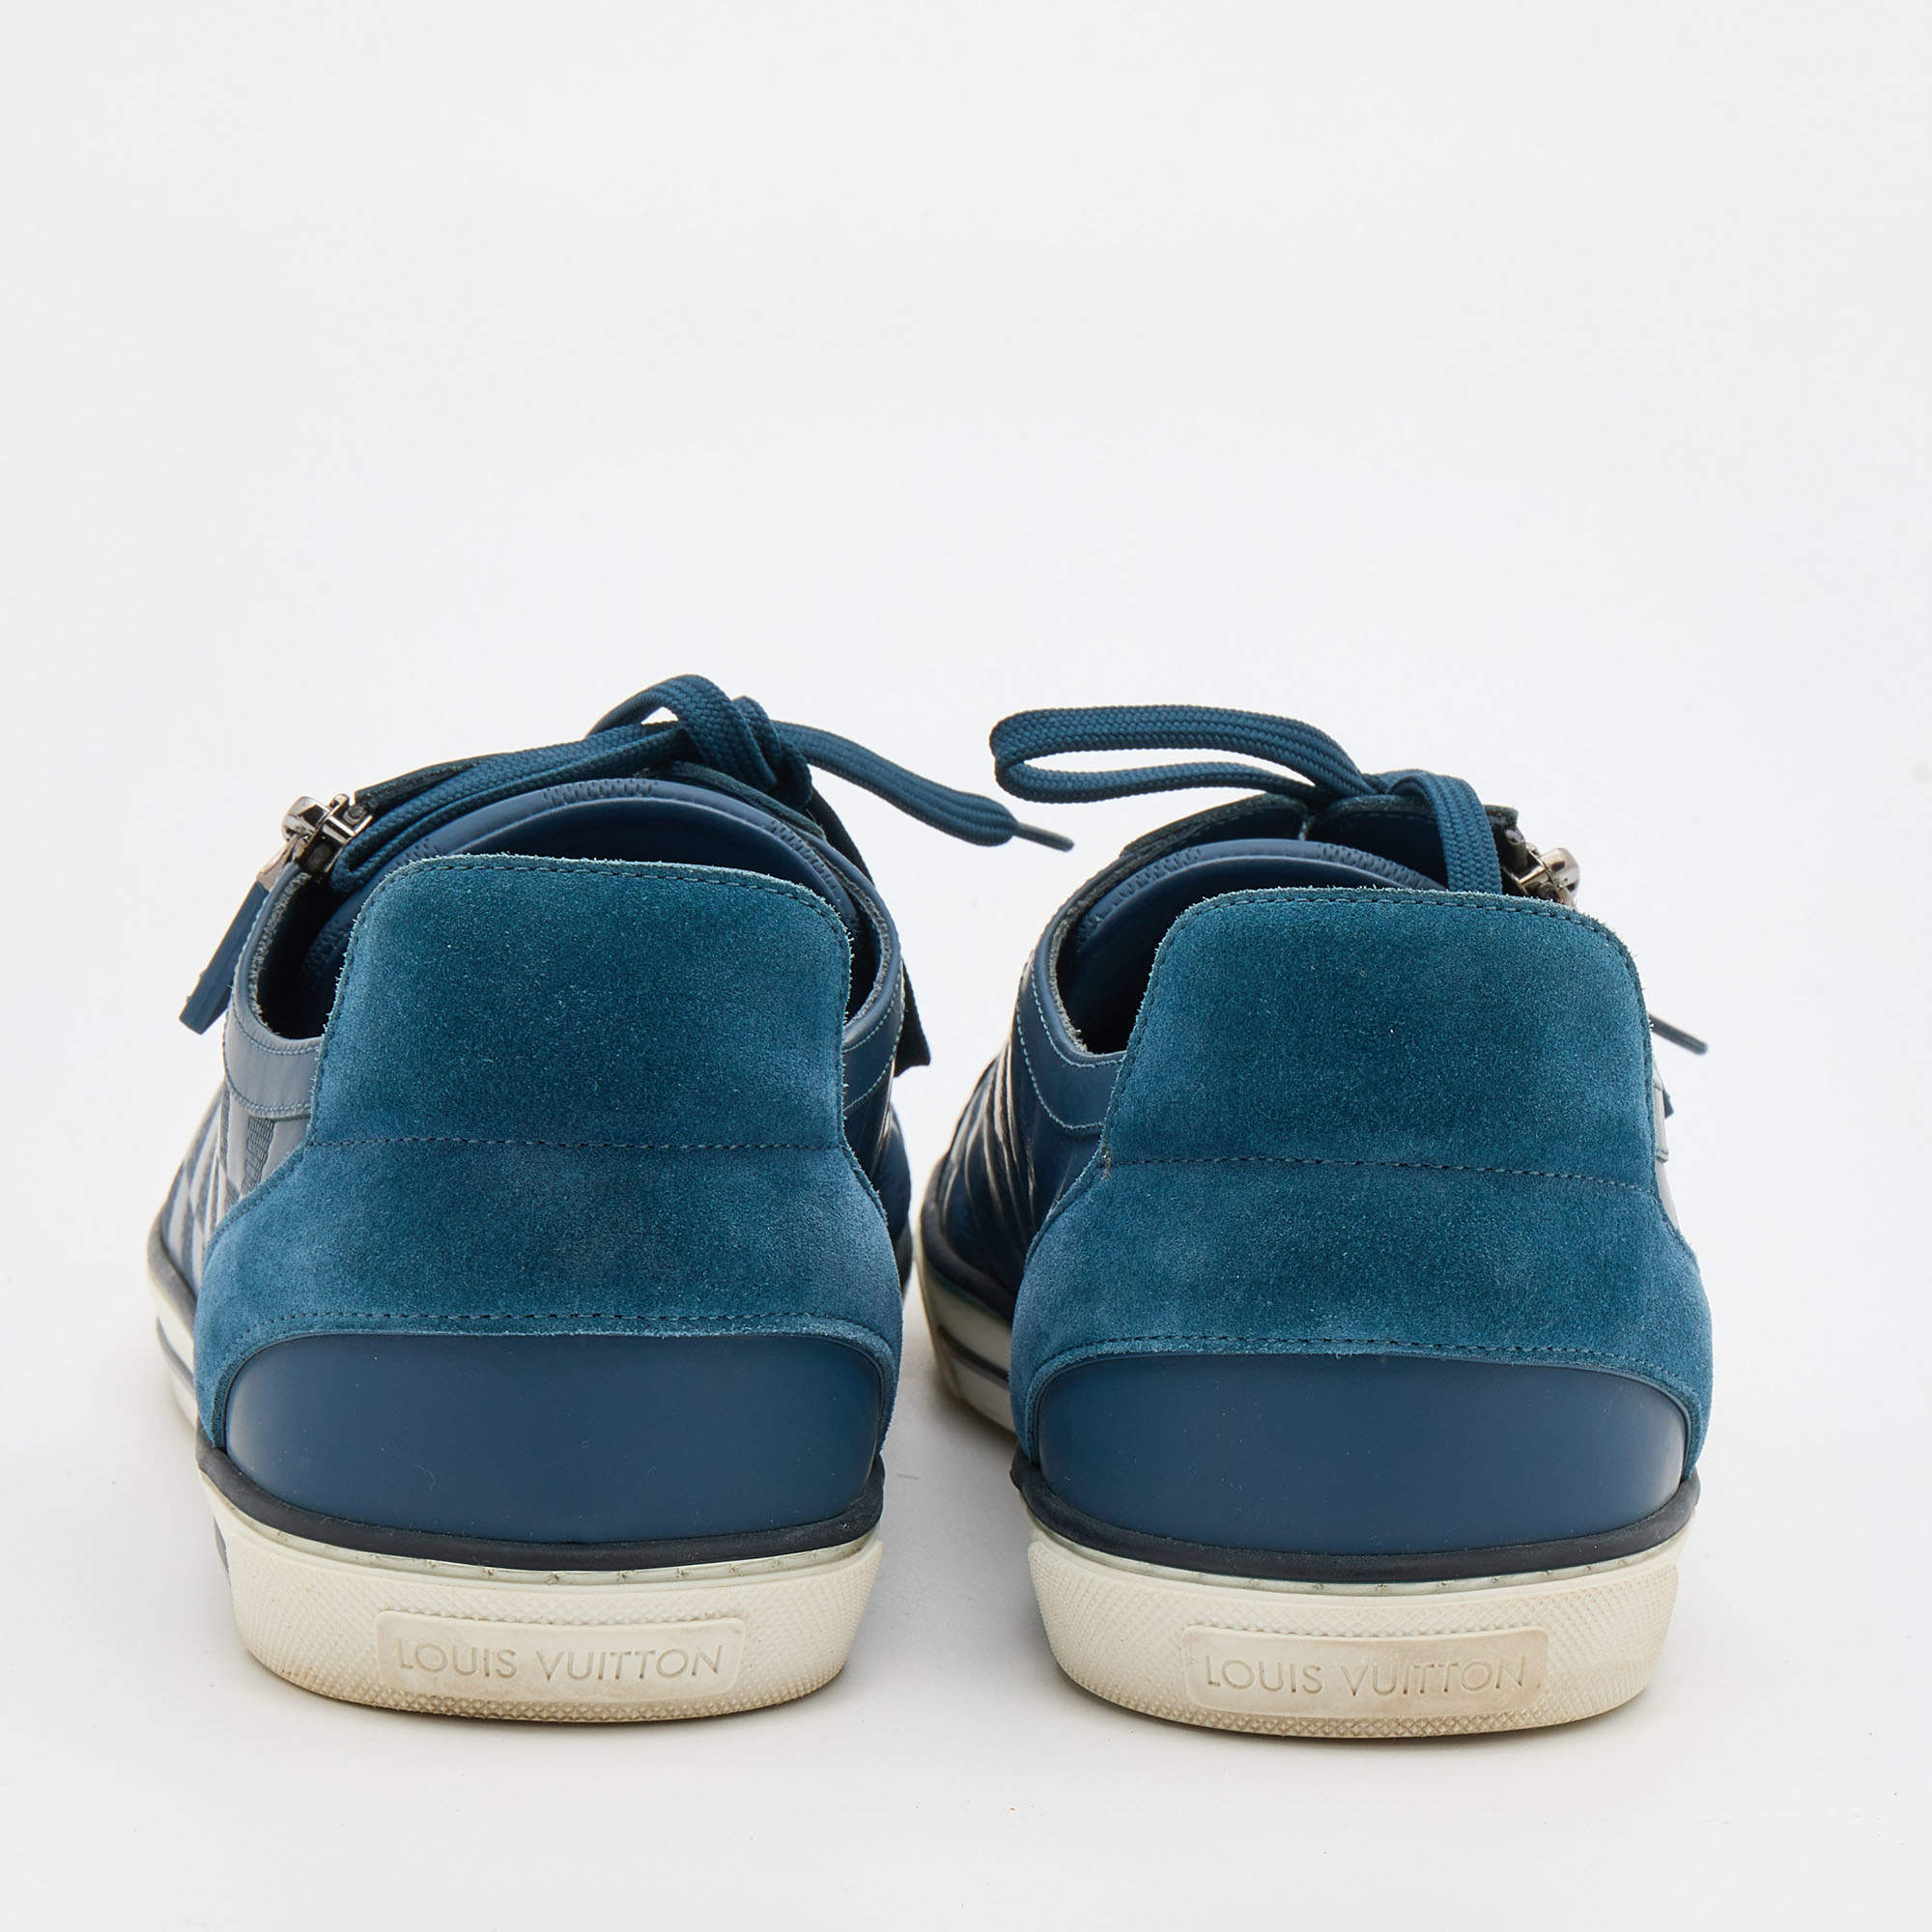 Louis Vuitton Damier Aventure Zip-Up Sneakers